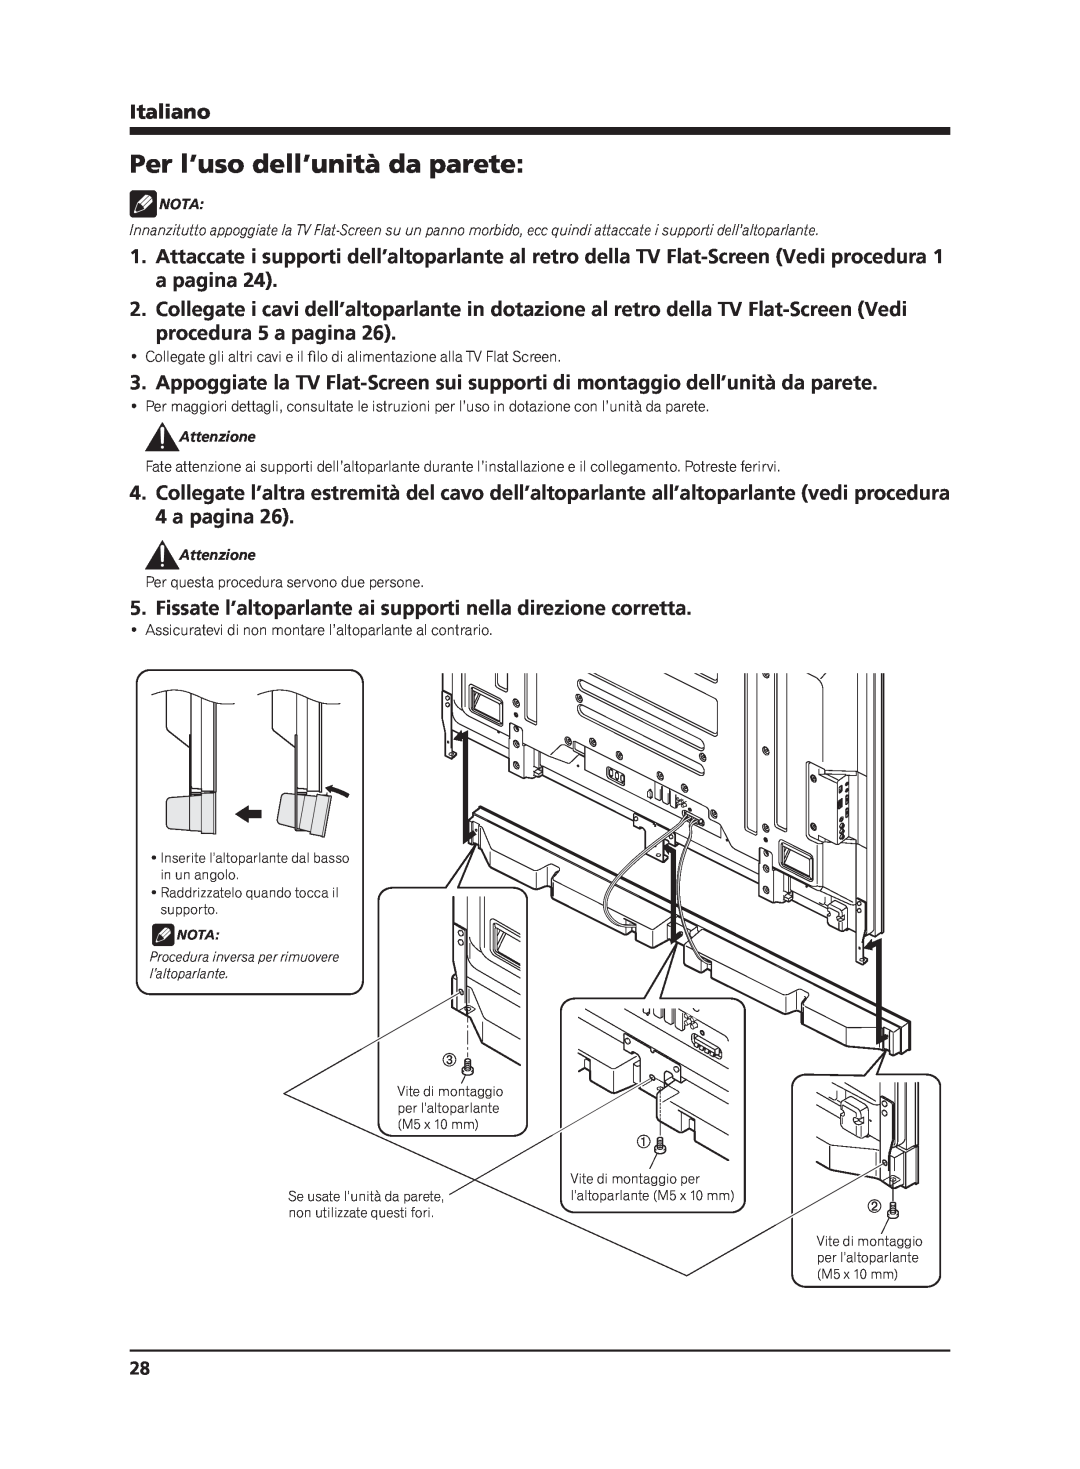 Pioneer PDP-S65 manual Per l’uso dell’unità da parete, procedura 5 a pagina, Italiano 